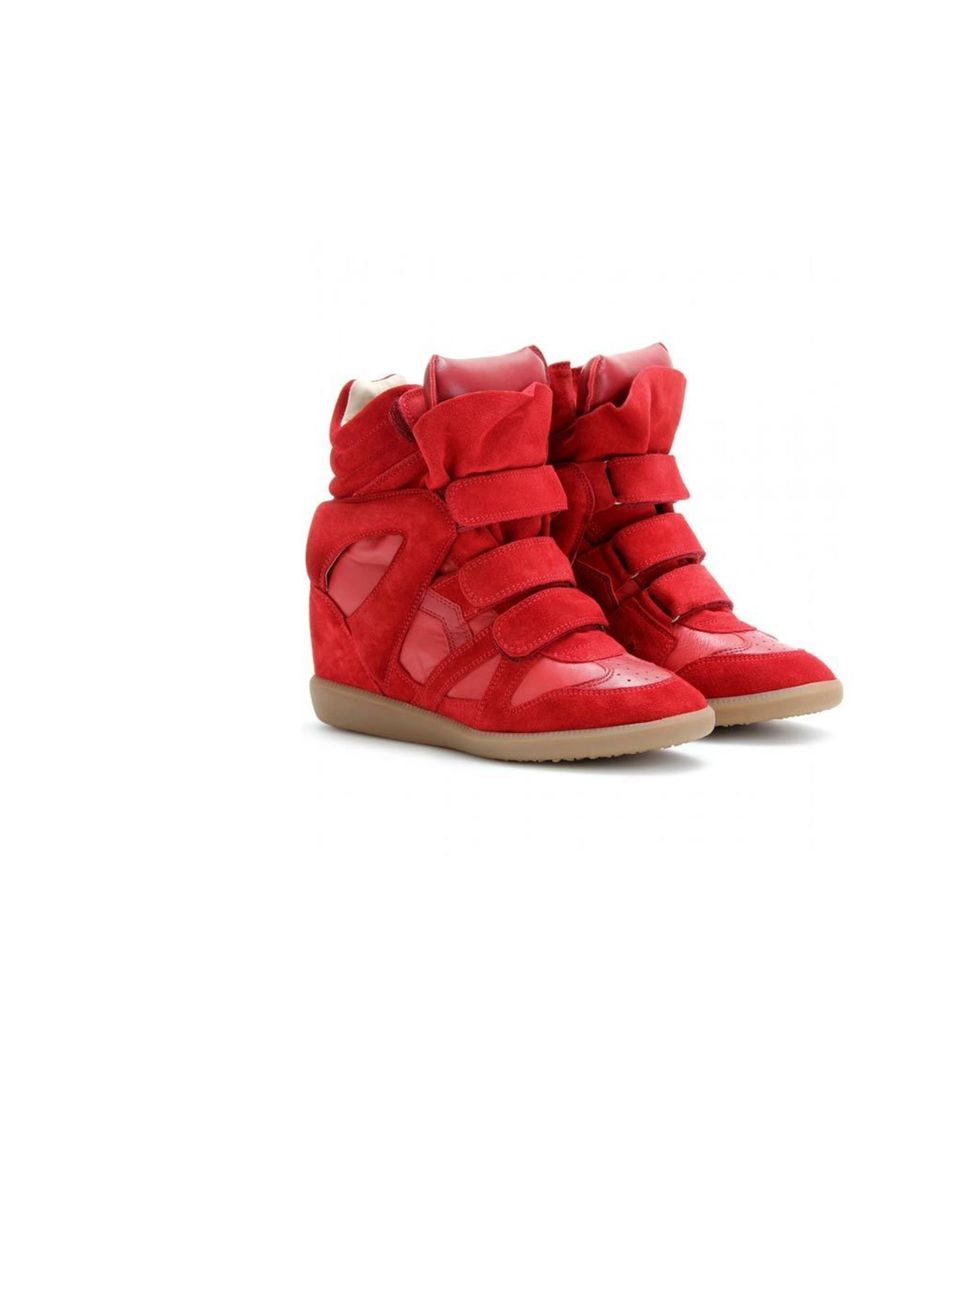 <p>Isabel Marant 'Bekett' wedge heel sneakers, £385, at <a href="http://www.mytheresa.com/uk_en/bekett-suede-wedge-sneakers-158514.html">mytheresa.com</a></p>